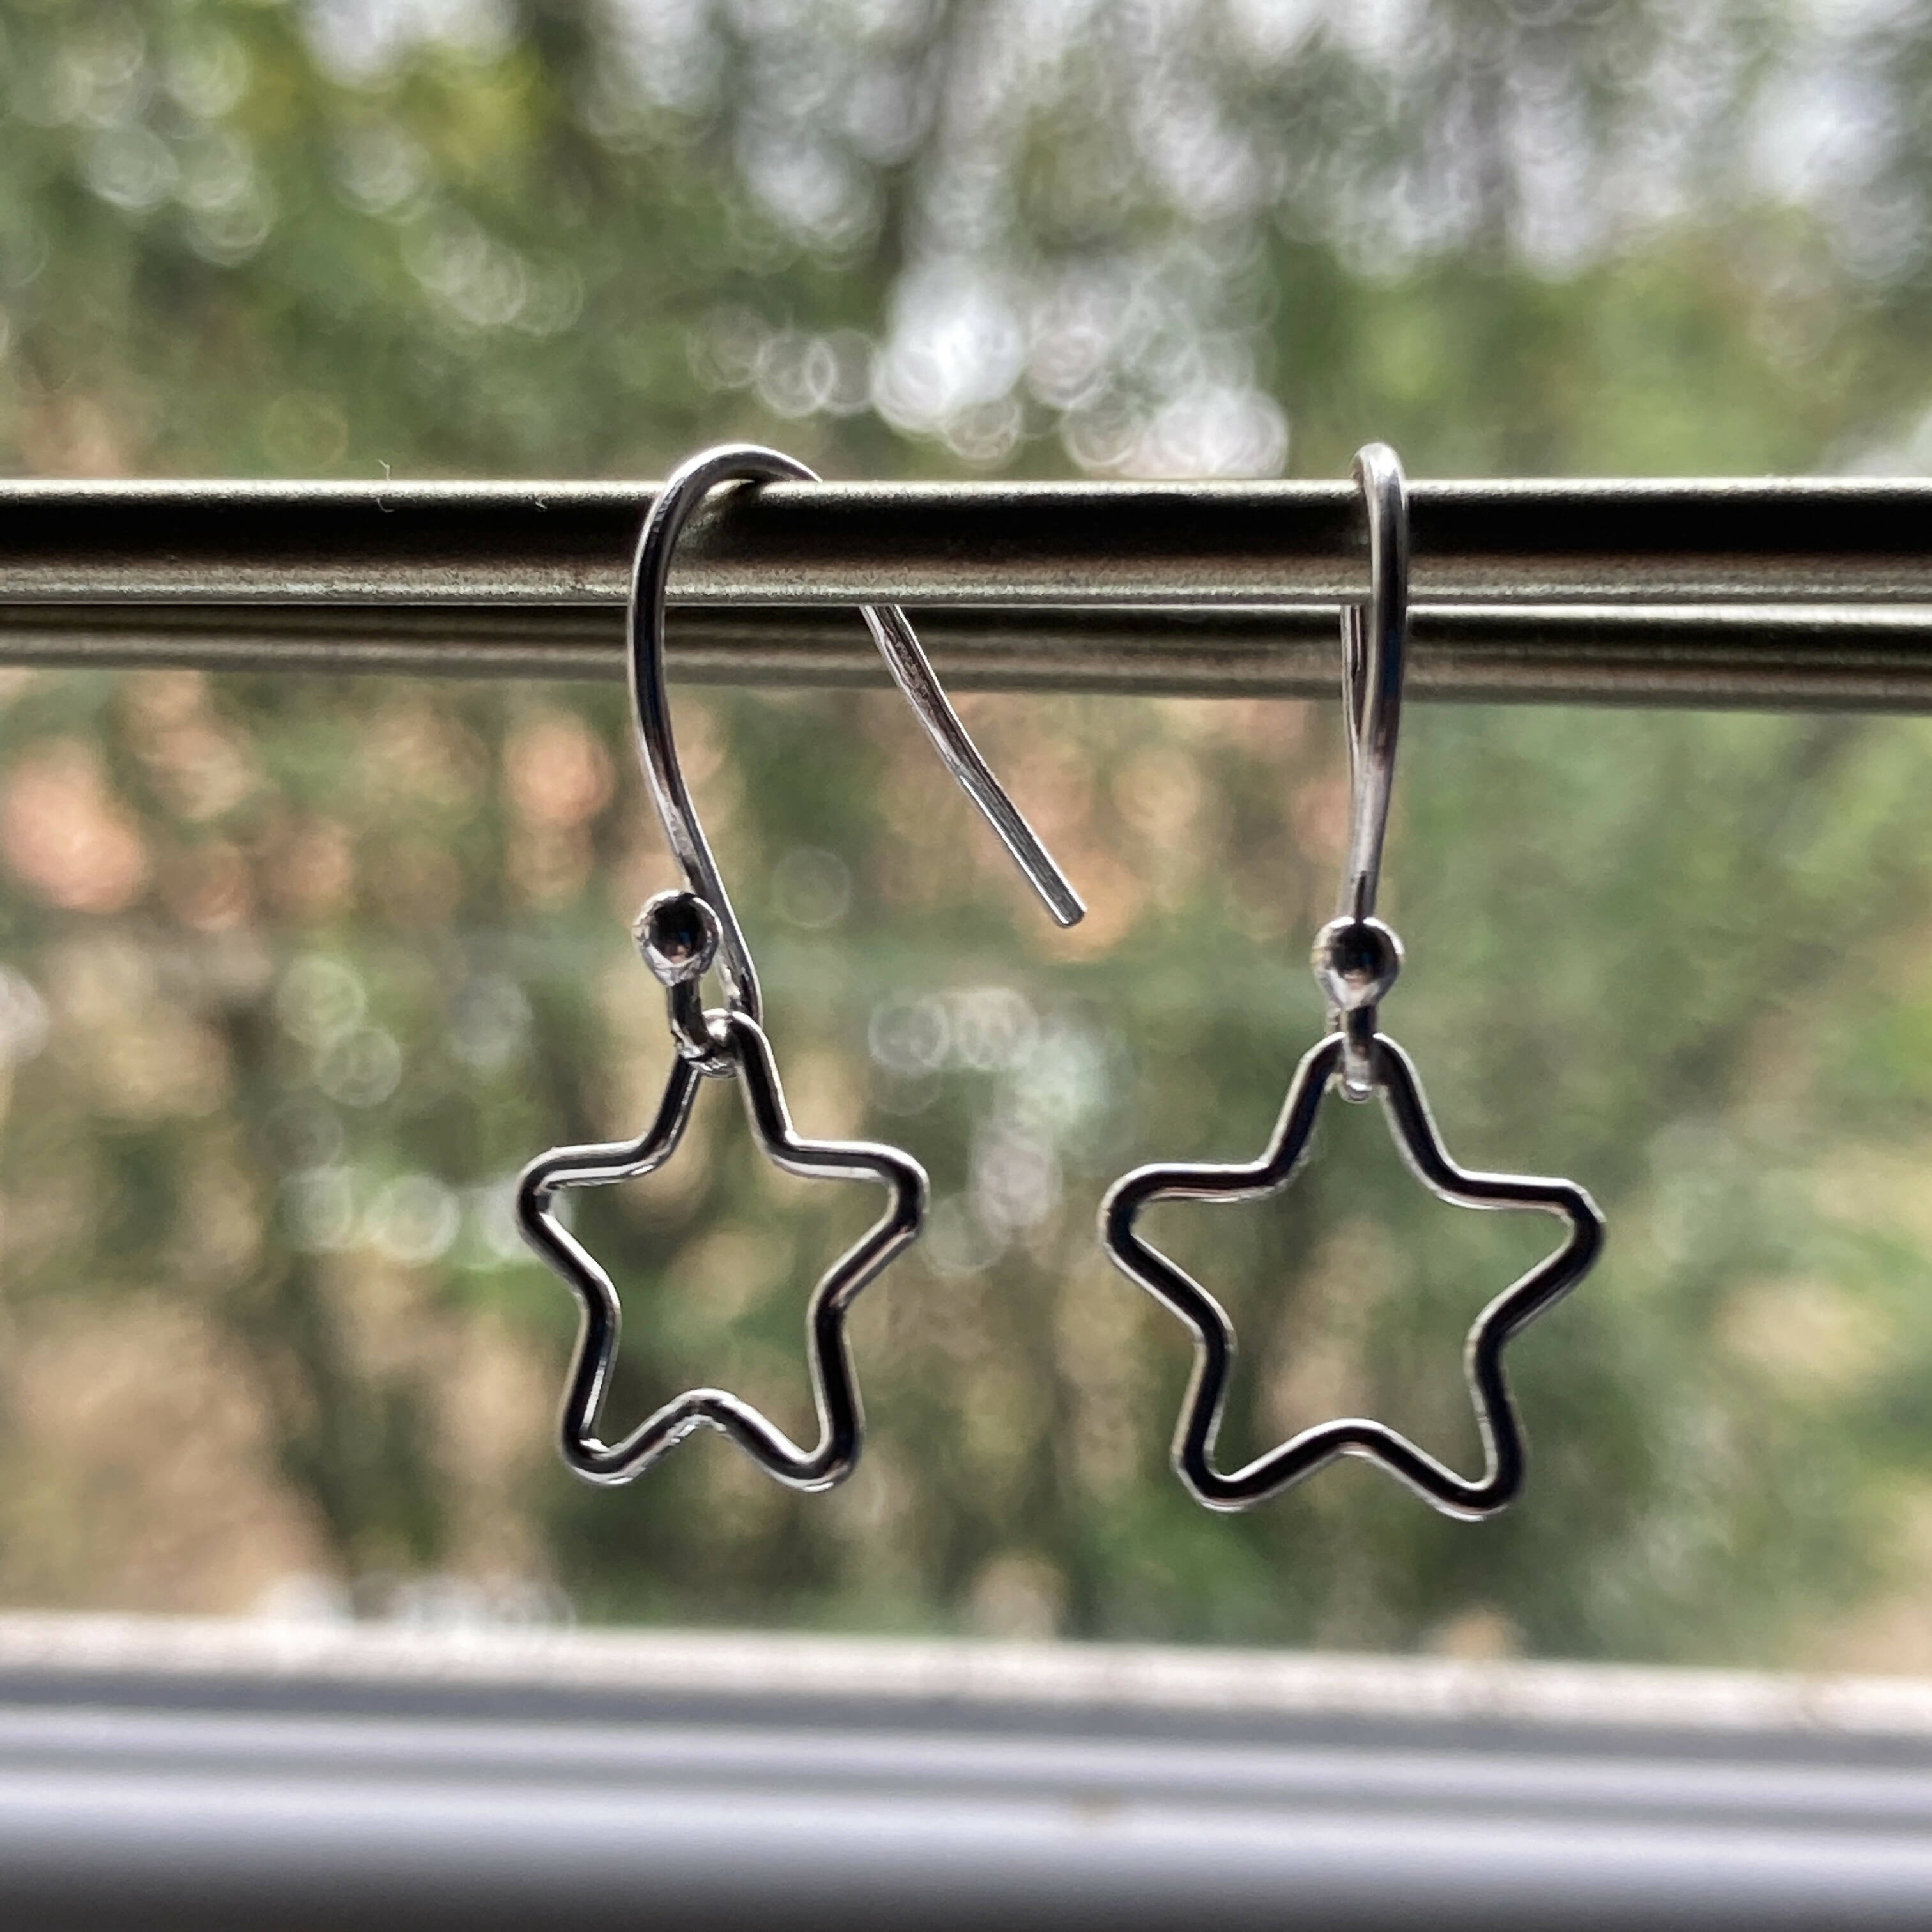 Silver Star Outline Earrings